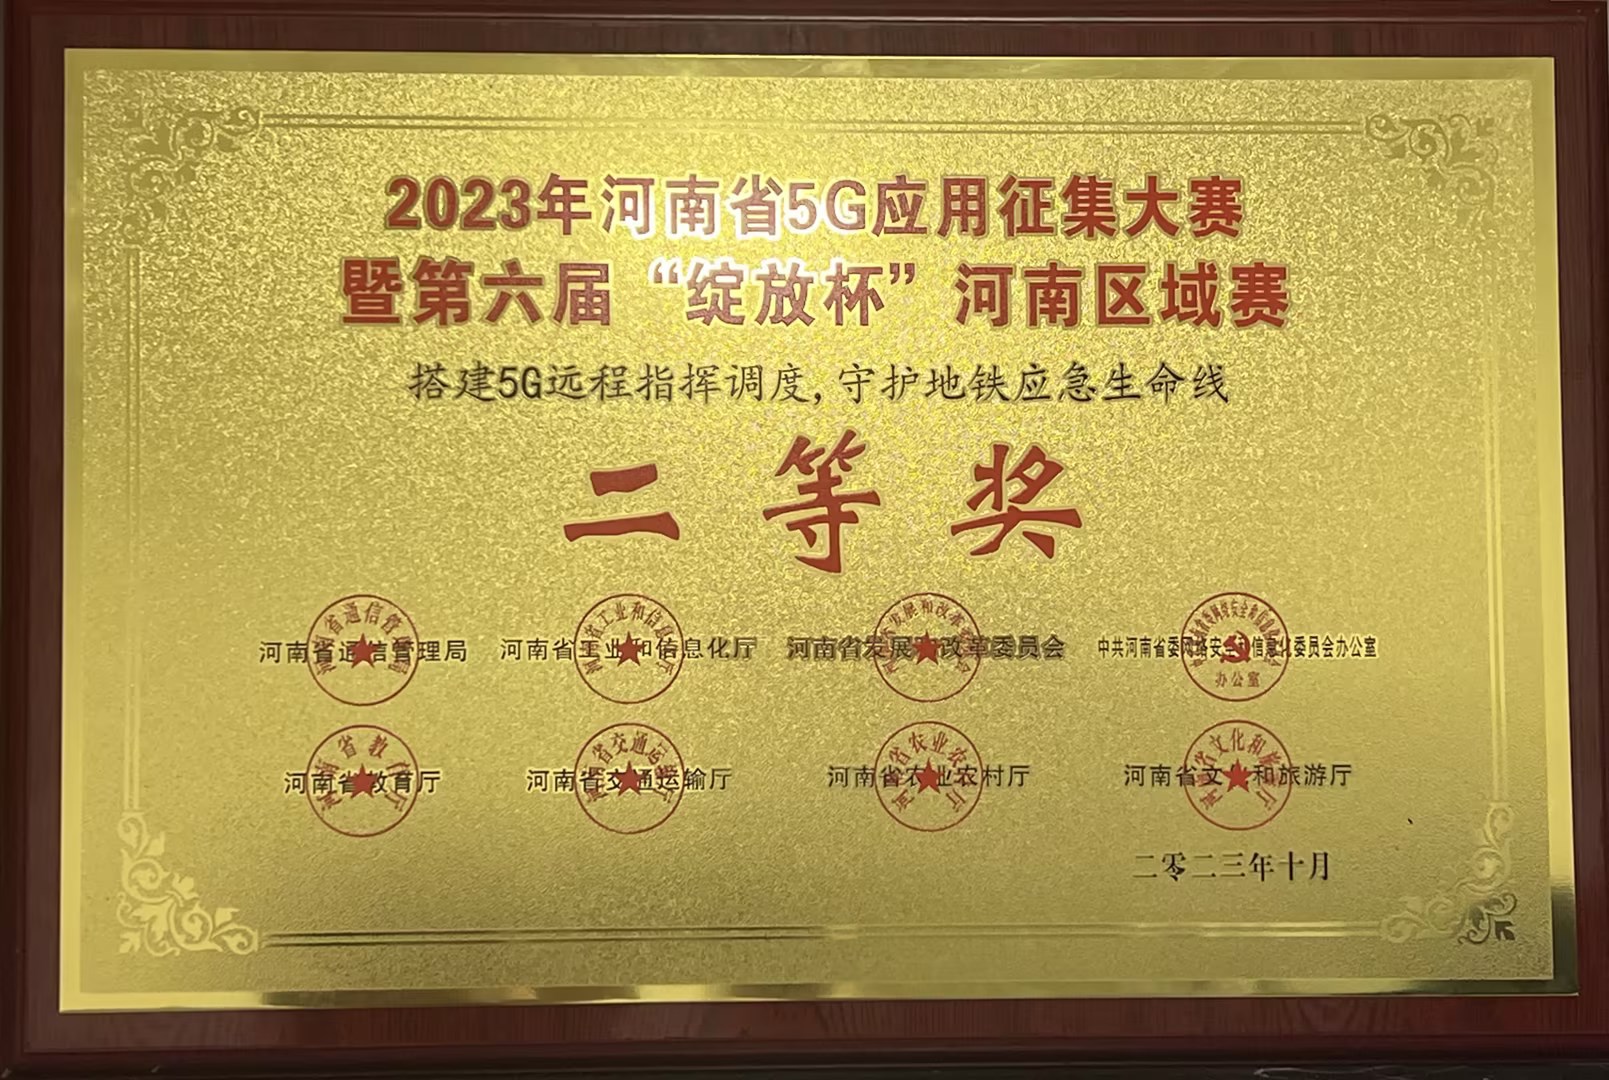 2023年河南省5G应用征集大赛暨第六届“绽放杯”河南区域赛二等奖